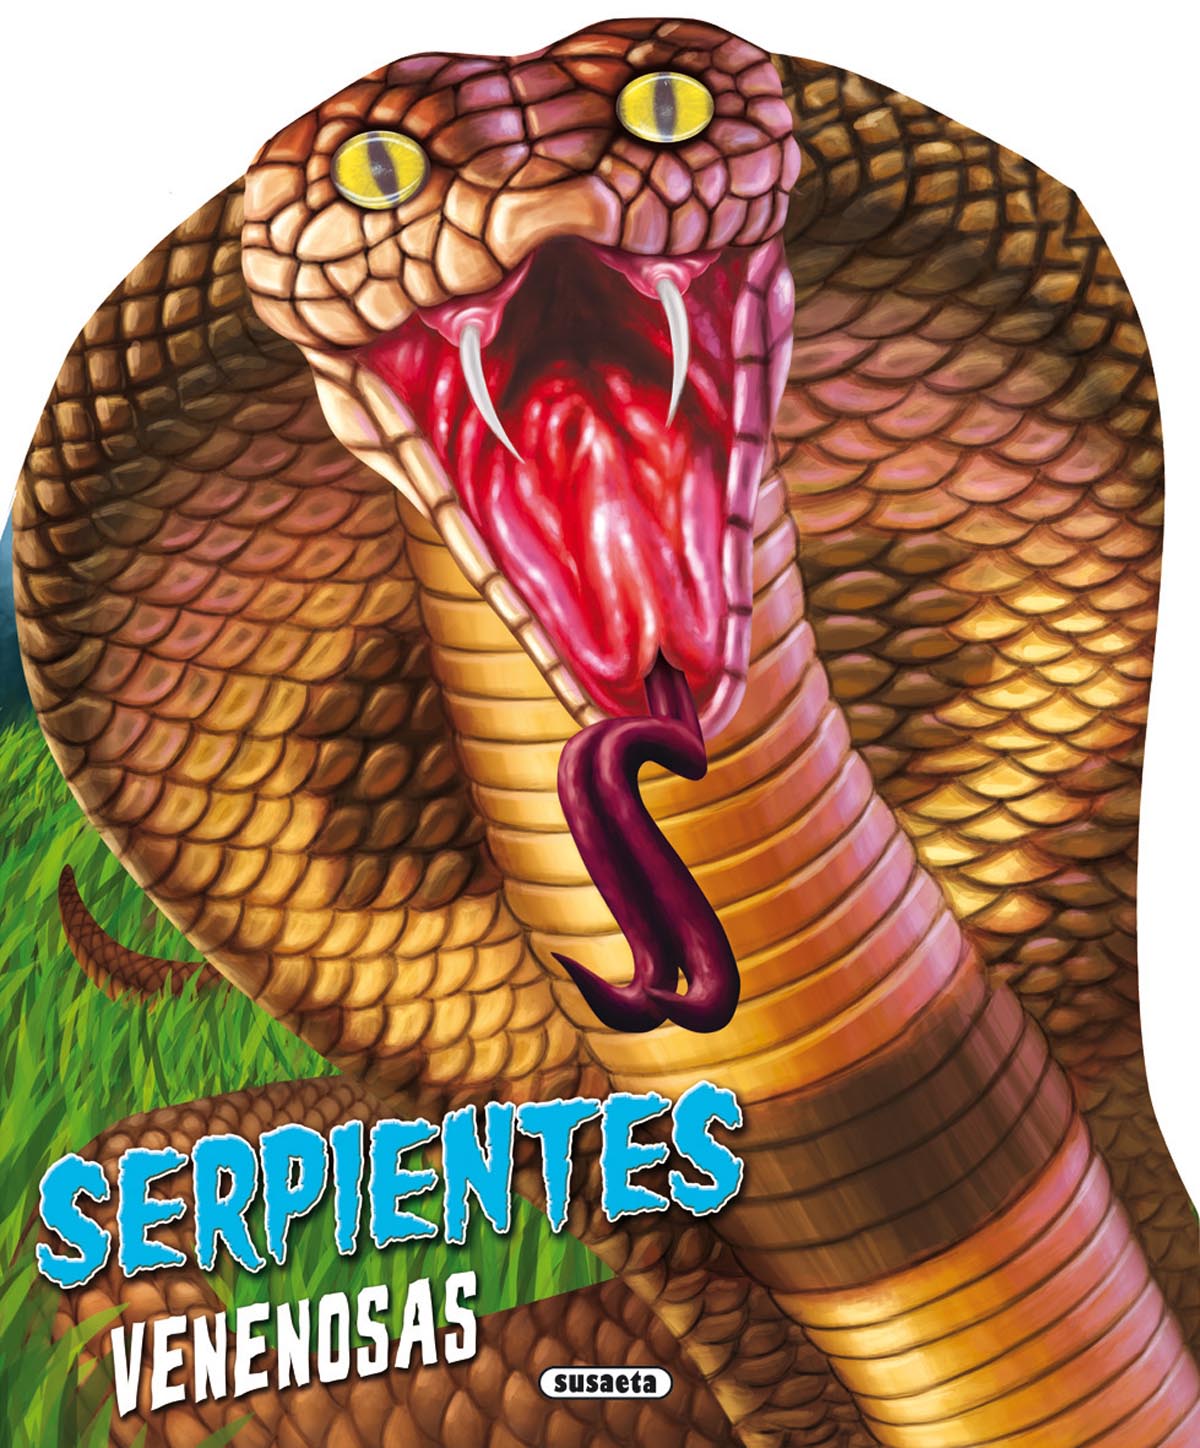 Serpientes venenosas